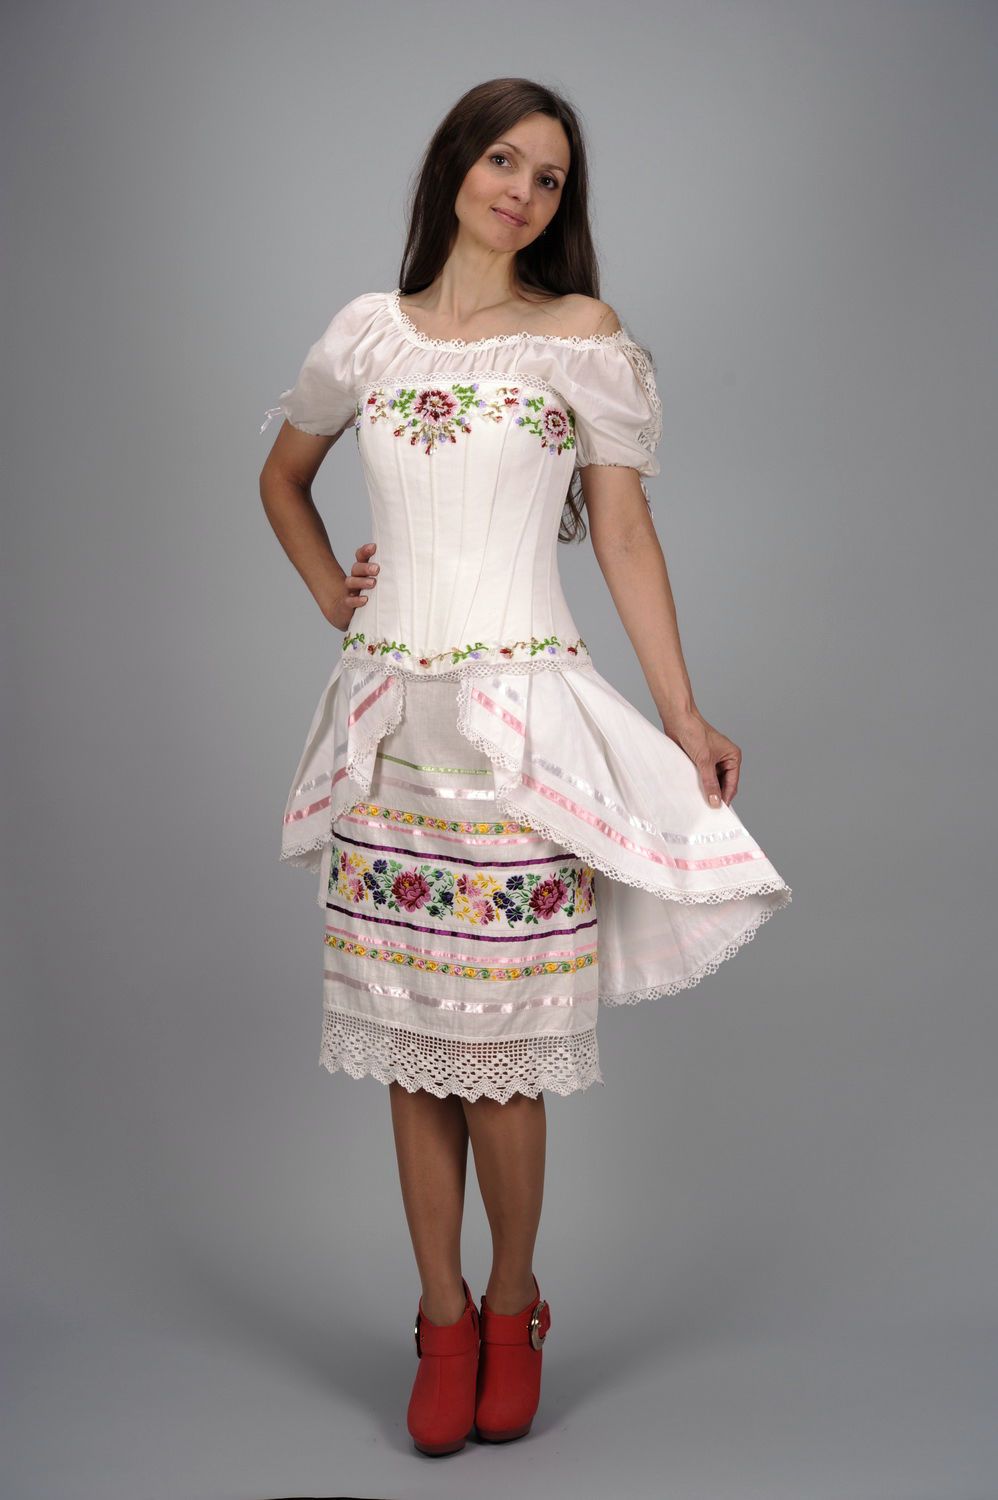 Ensemble blouse, corset, jupe en style ethnique photo 1